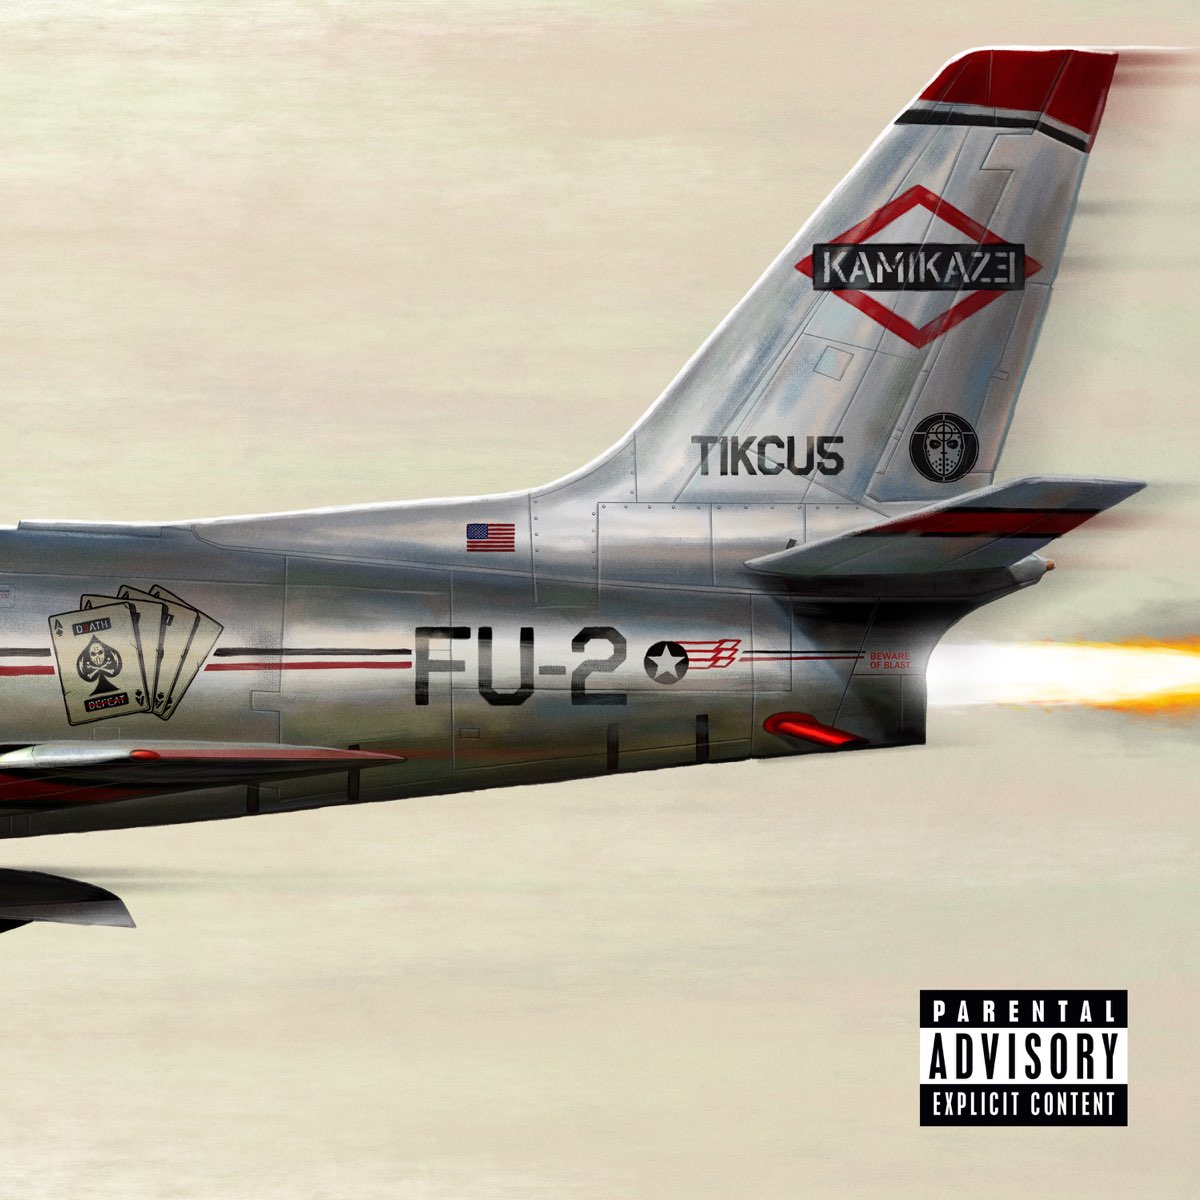 Eminem — Fall cover artwork